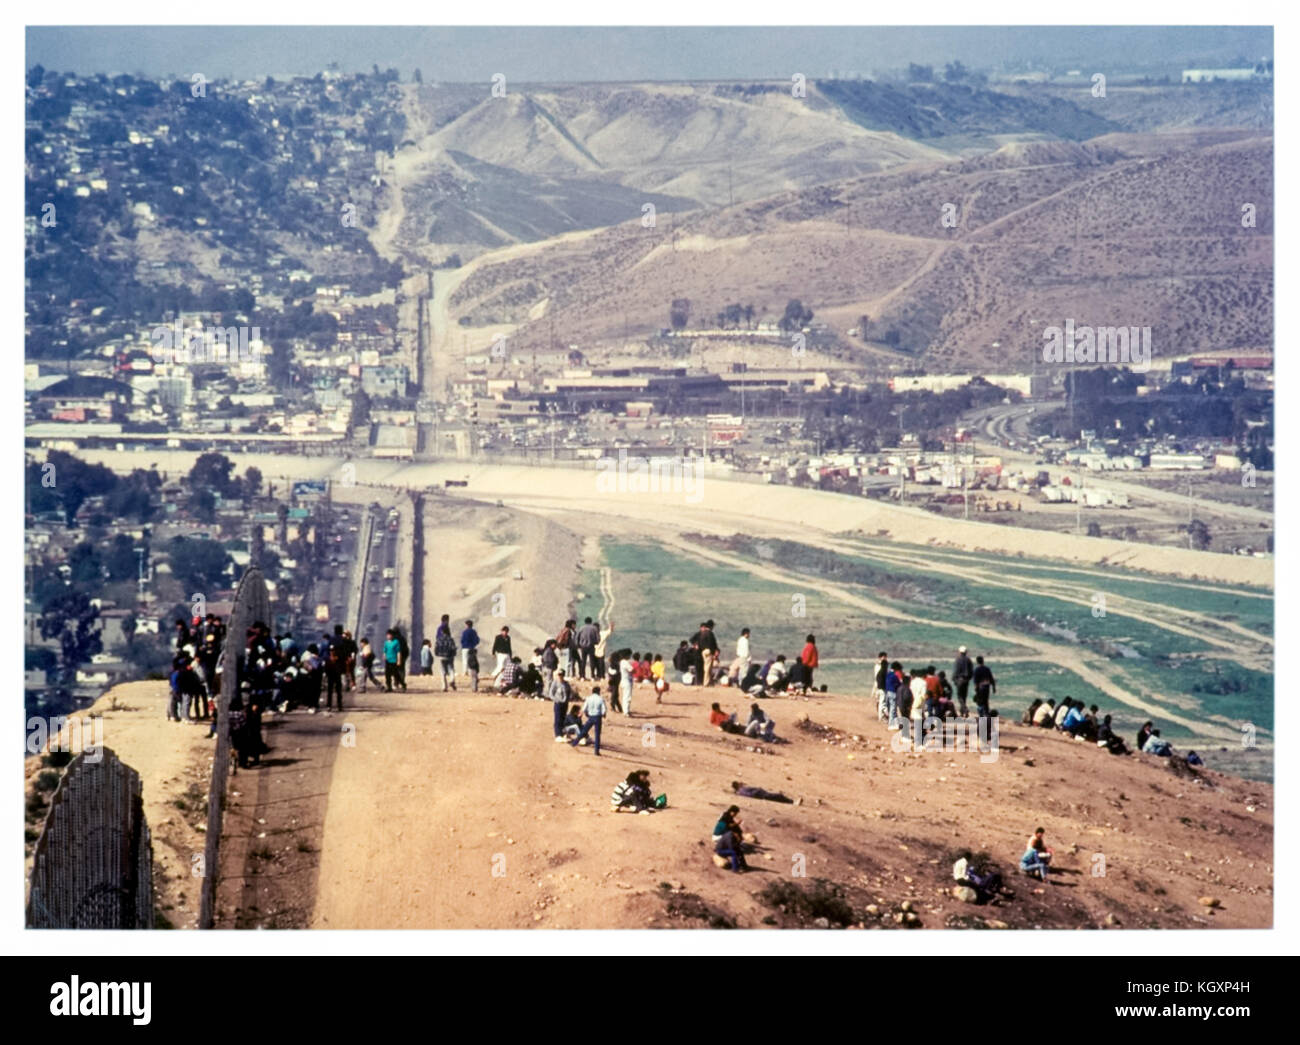 US-Mexiko internationale Grenze zwischen Tijuana, Mexiko (links) und San Diego, Kalifornien (rechts); illegale Einwanderer Verletzung das Wellblech Zaun in den 1980er Jahren. Weitere Informationen finden Sie unten. Stockfoto